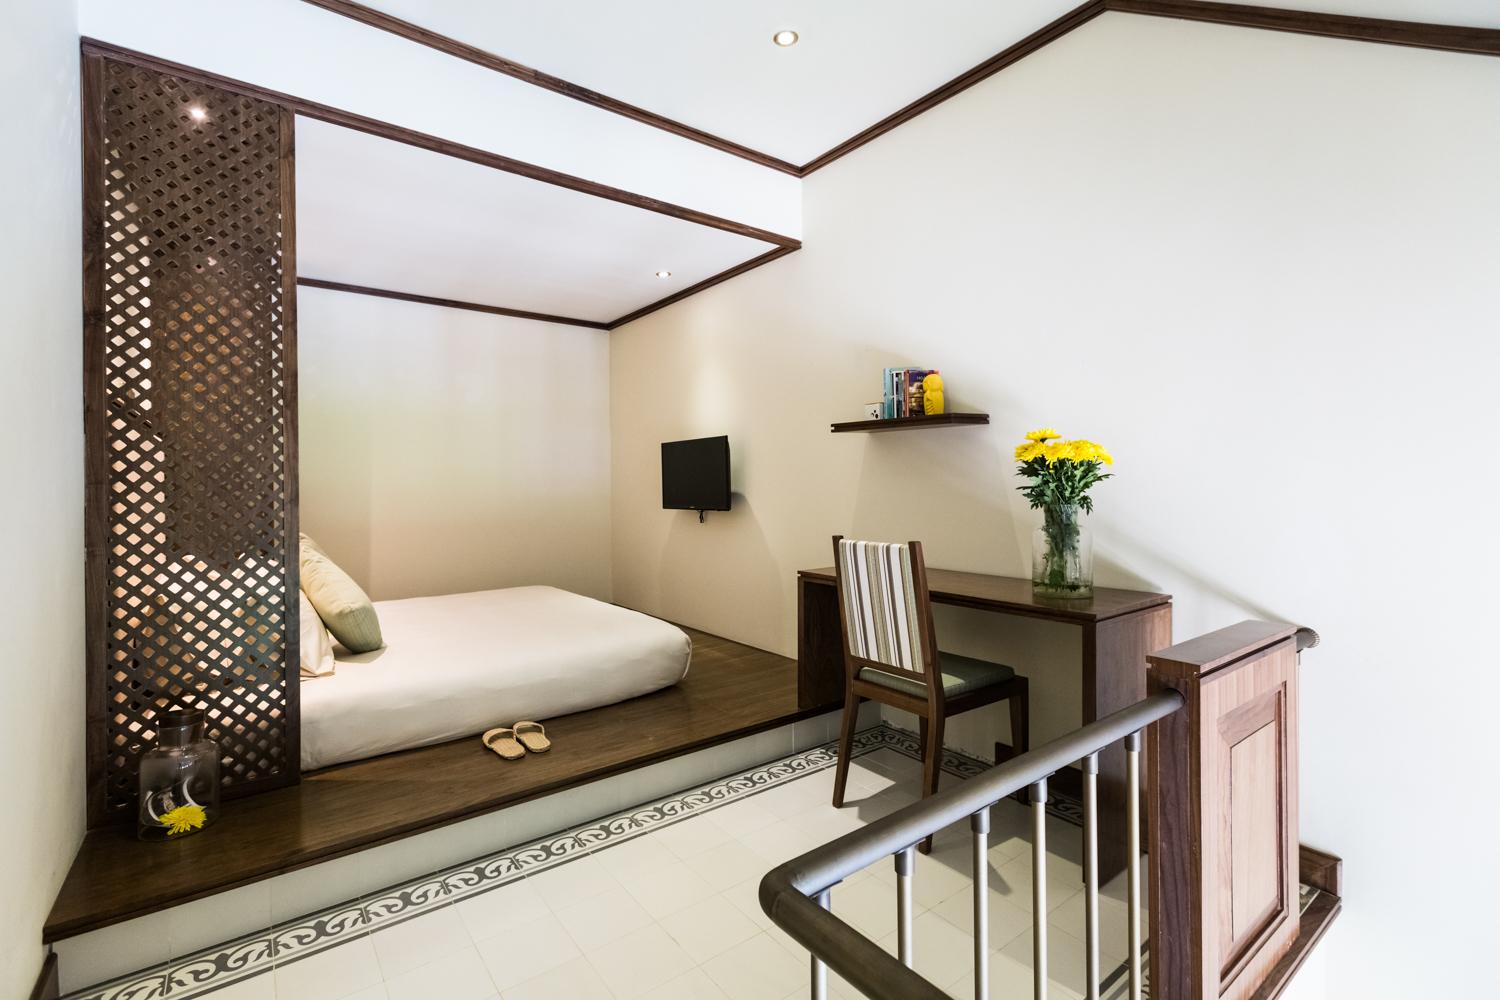 Almanity Hoi An Wellness Resort – Khu nghỉ dưỡng 4 sao với lối kiến trúc kết nối văn hóa xưa cổ và hiện đại 23